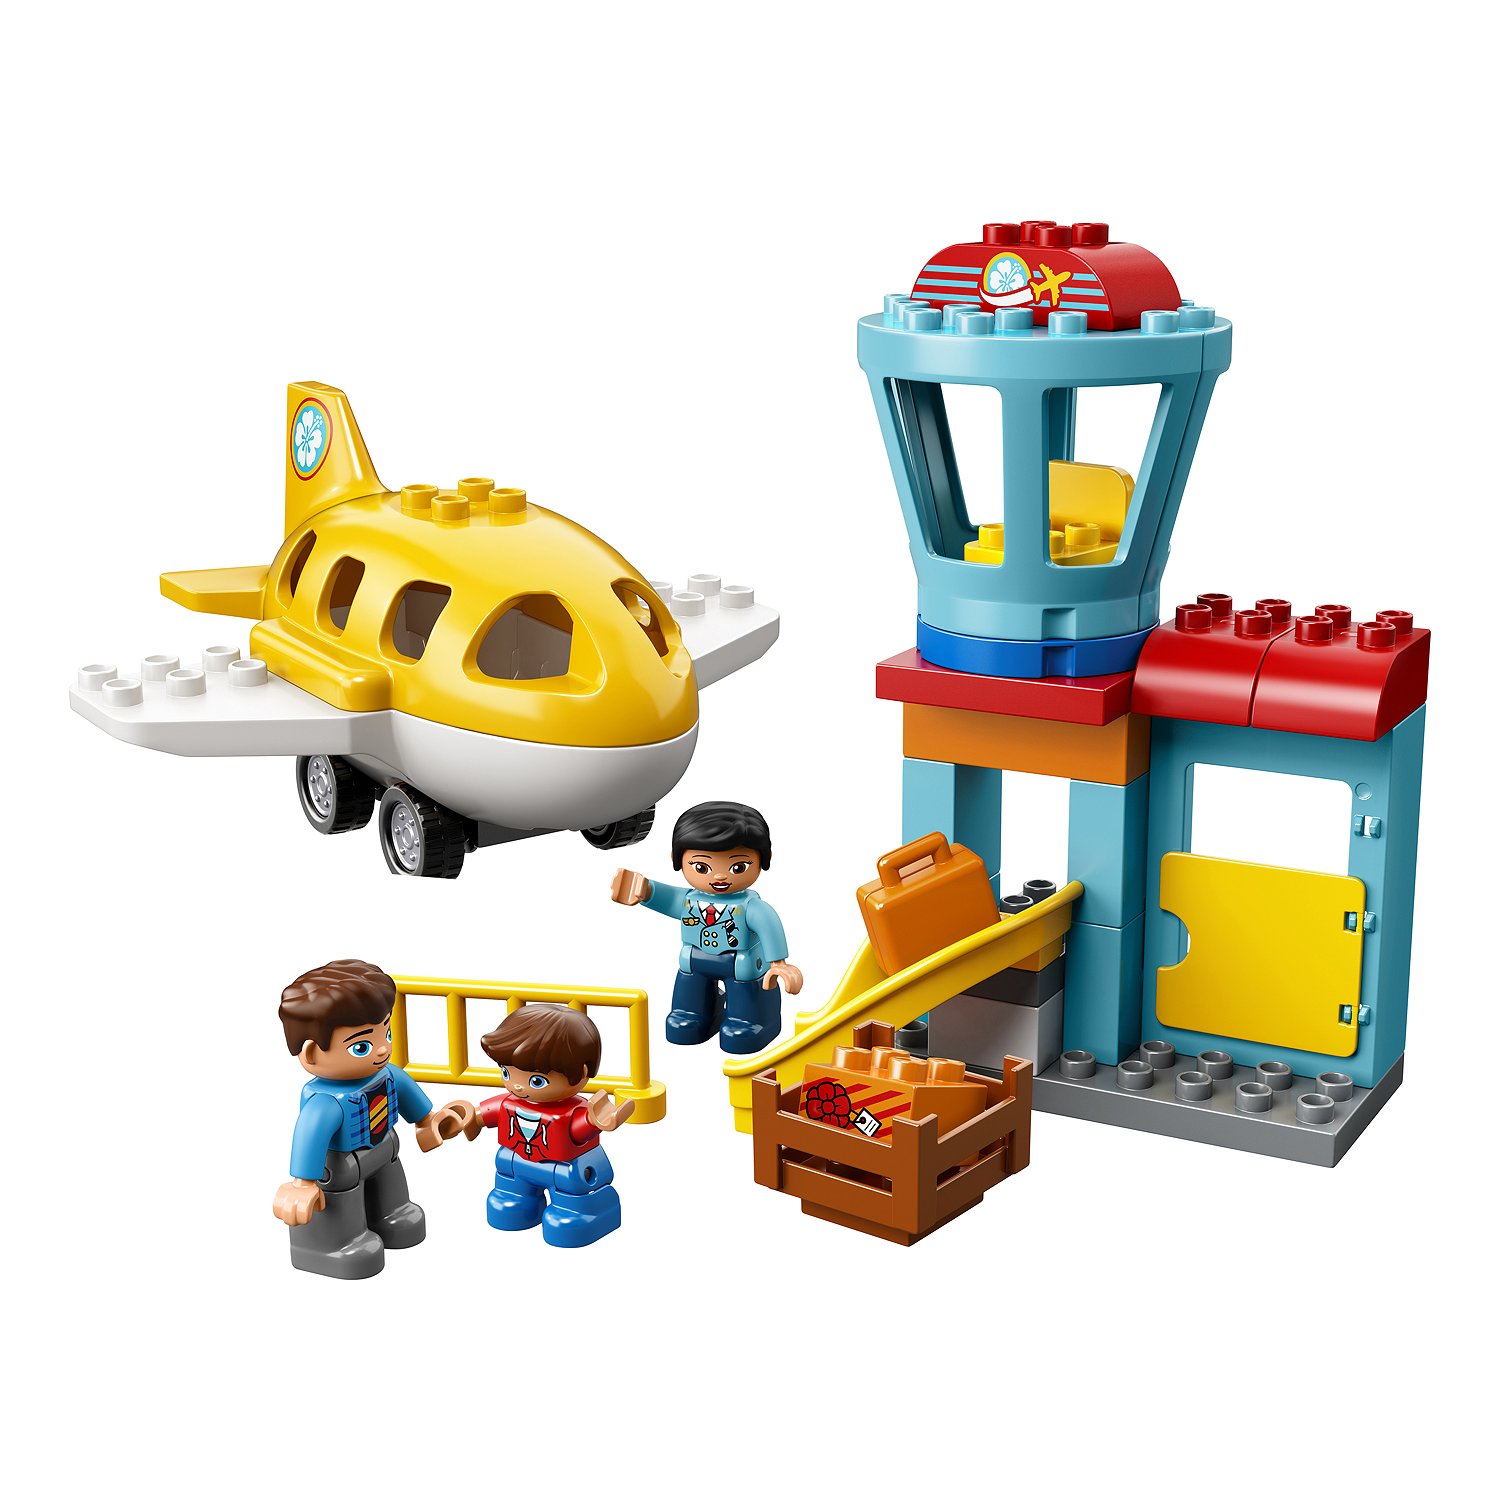 Конструктор LEGO Duplo «Аэропорт» 10871